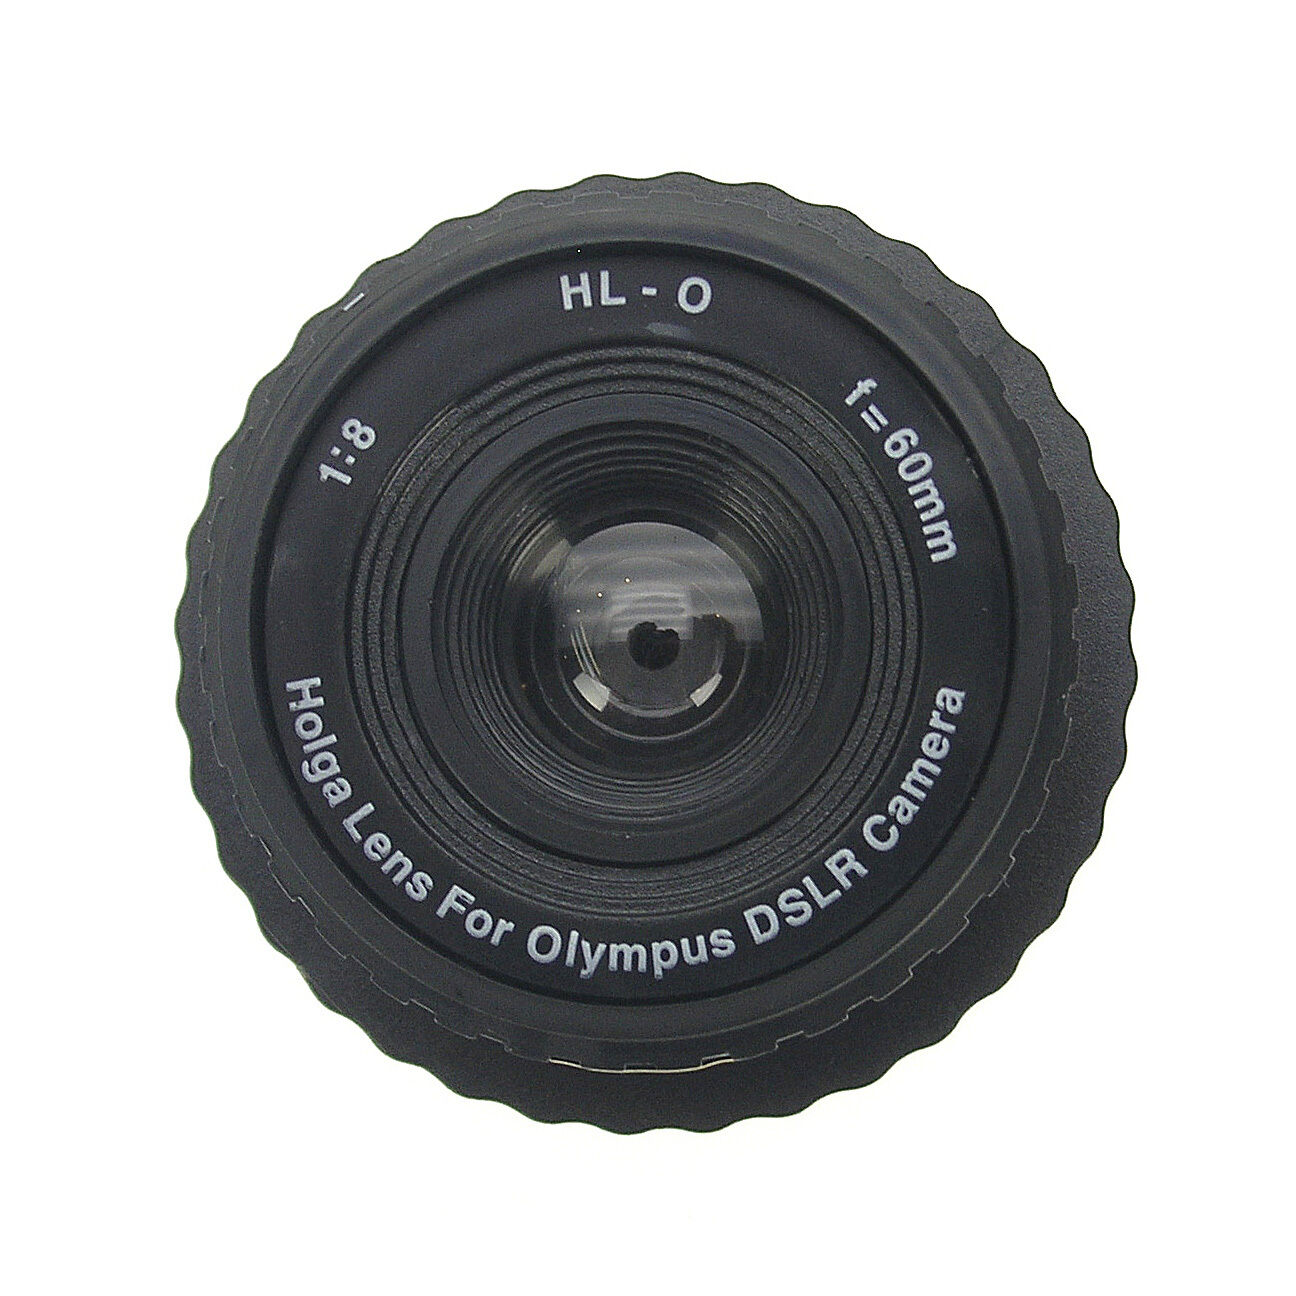 HOLGA HL-O Olympus DSLR Holga Lens F8.0 60mm Black